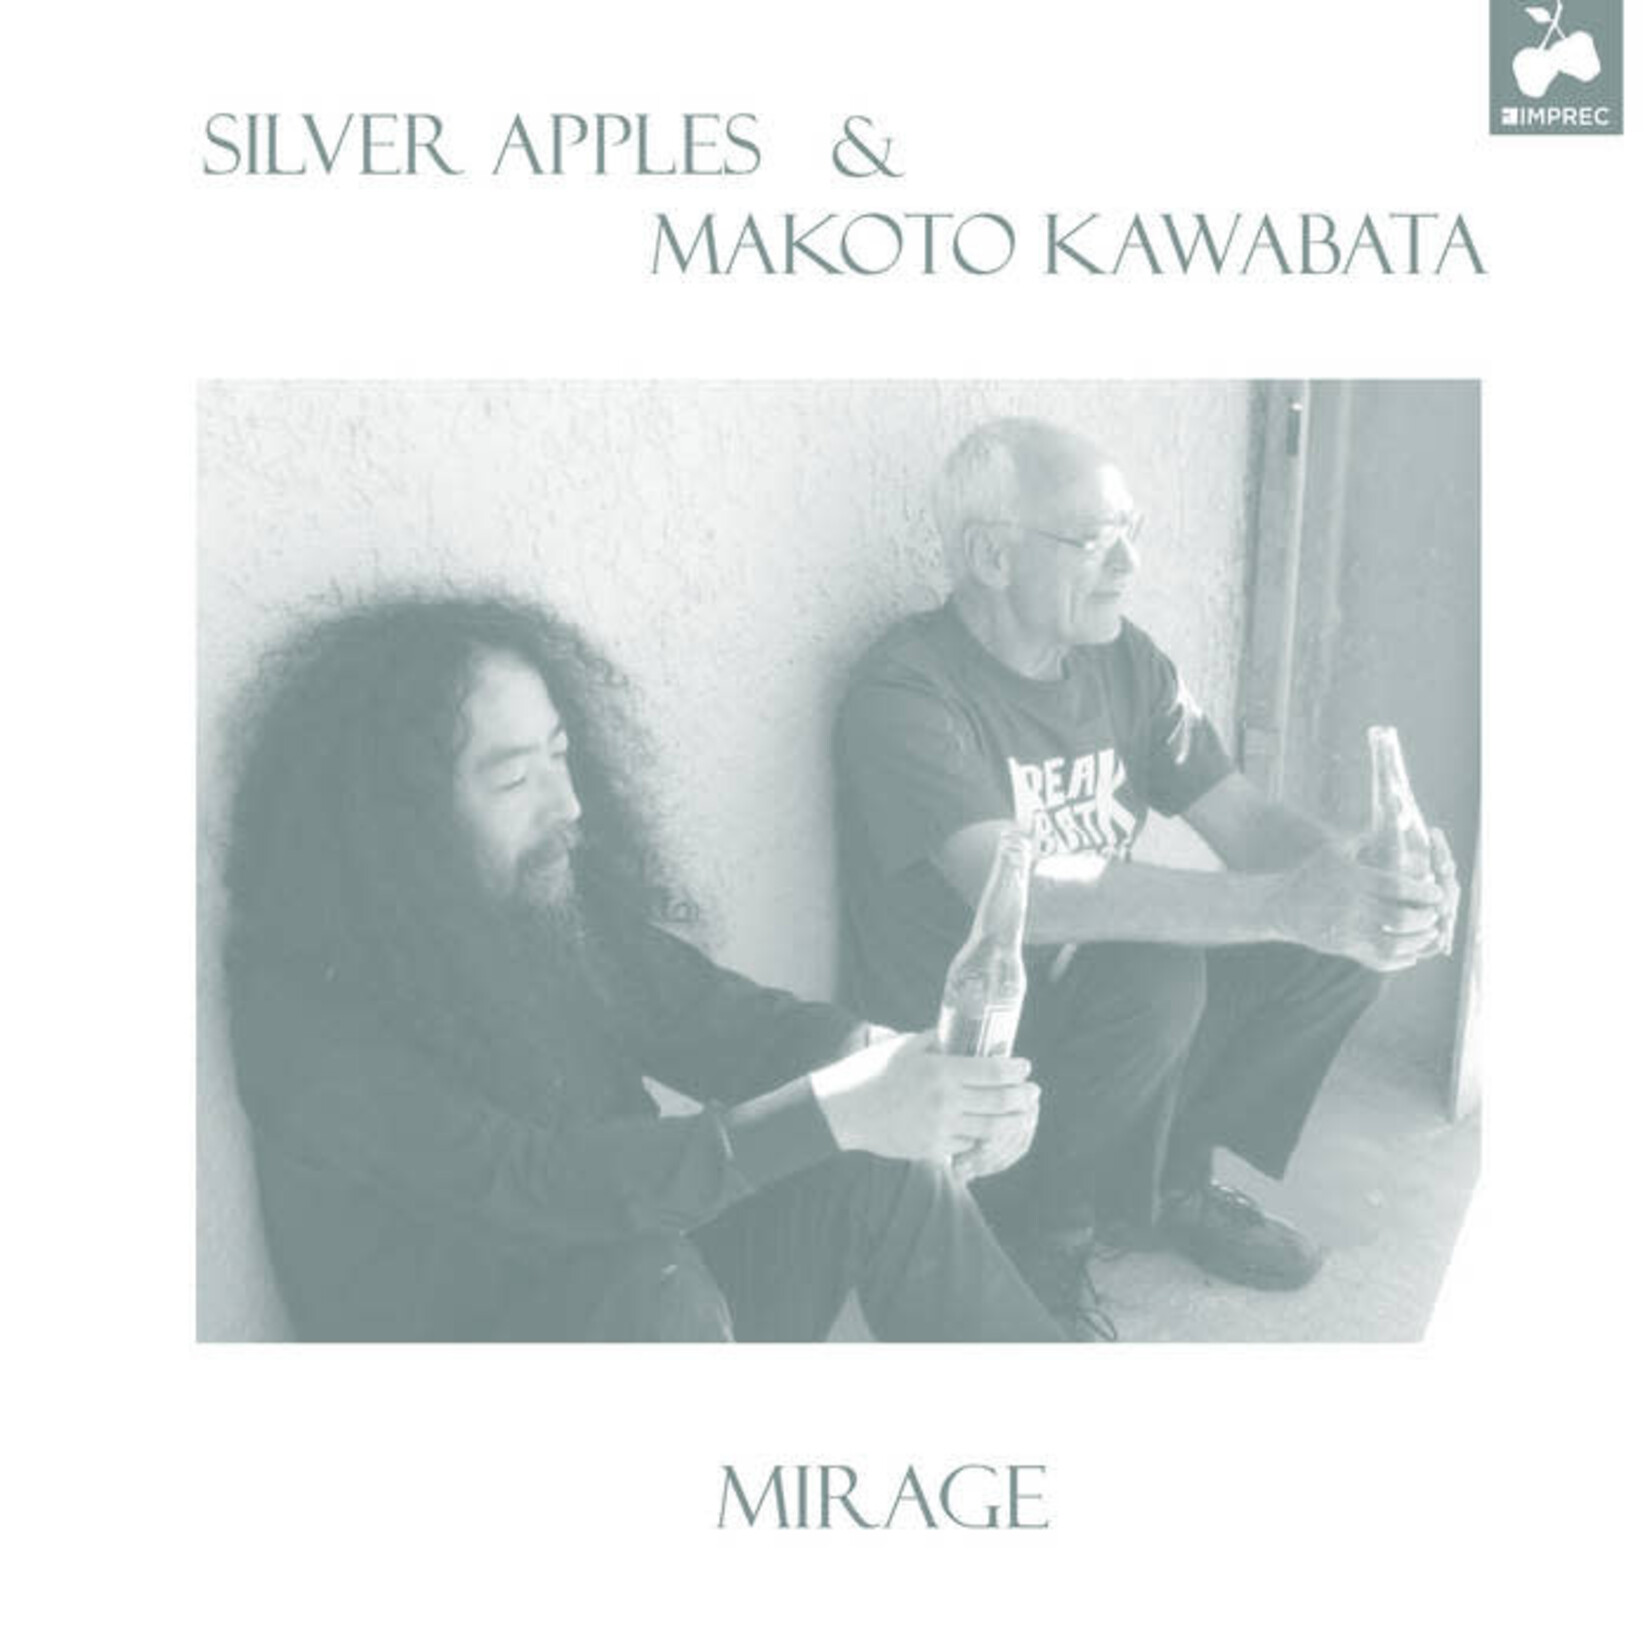 [New] Silver Apples & Makoto Kawabata - Mirage